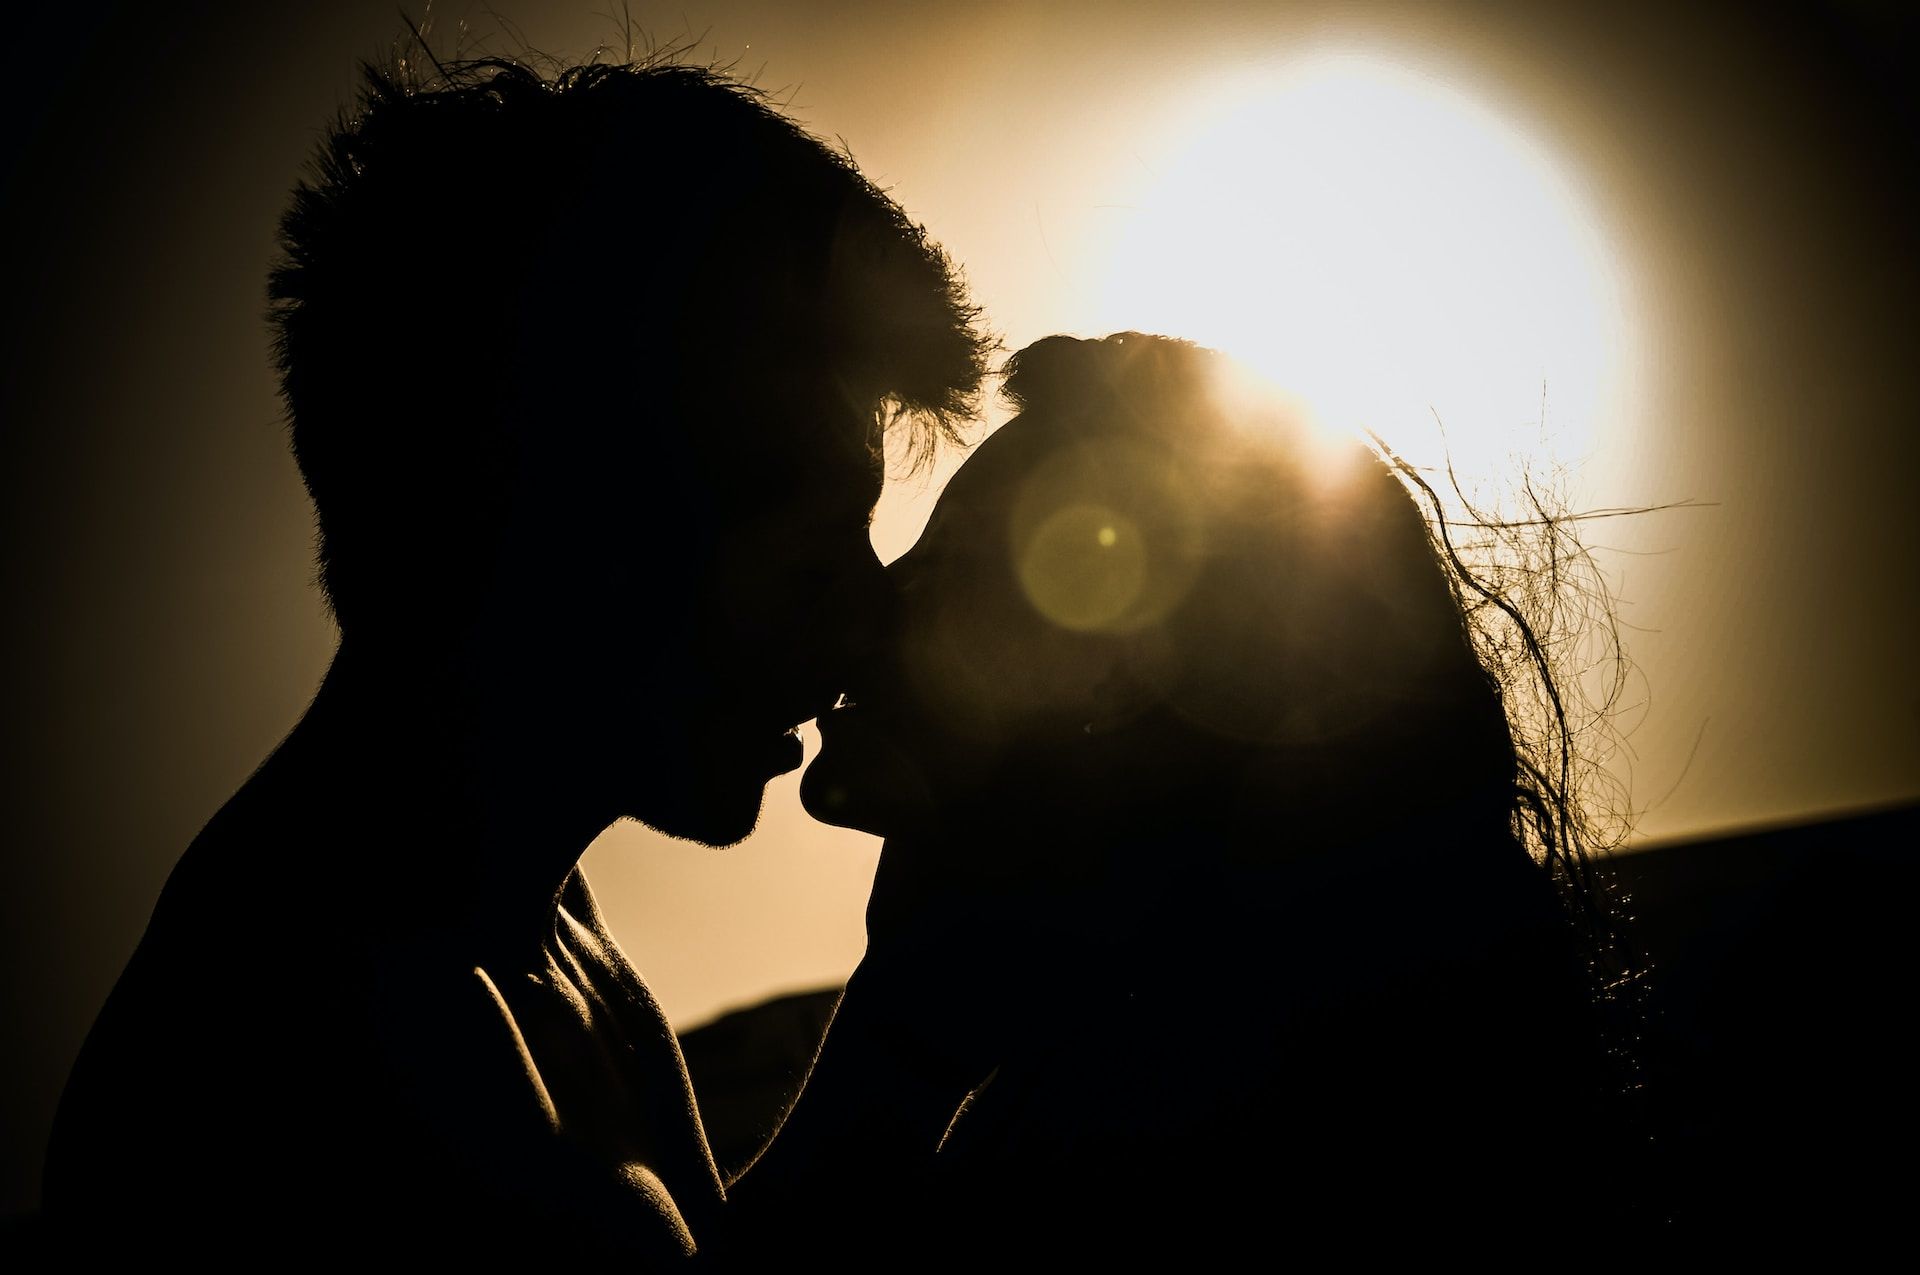 baiser sur fond de soleil couchant - Photo de Alejandra Quiroz sur https://unsplash.com/fr/photos/F5hTTI4Hlv4